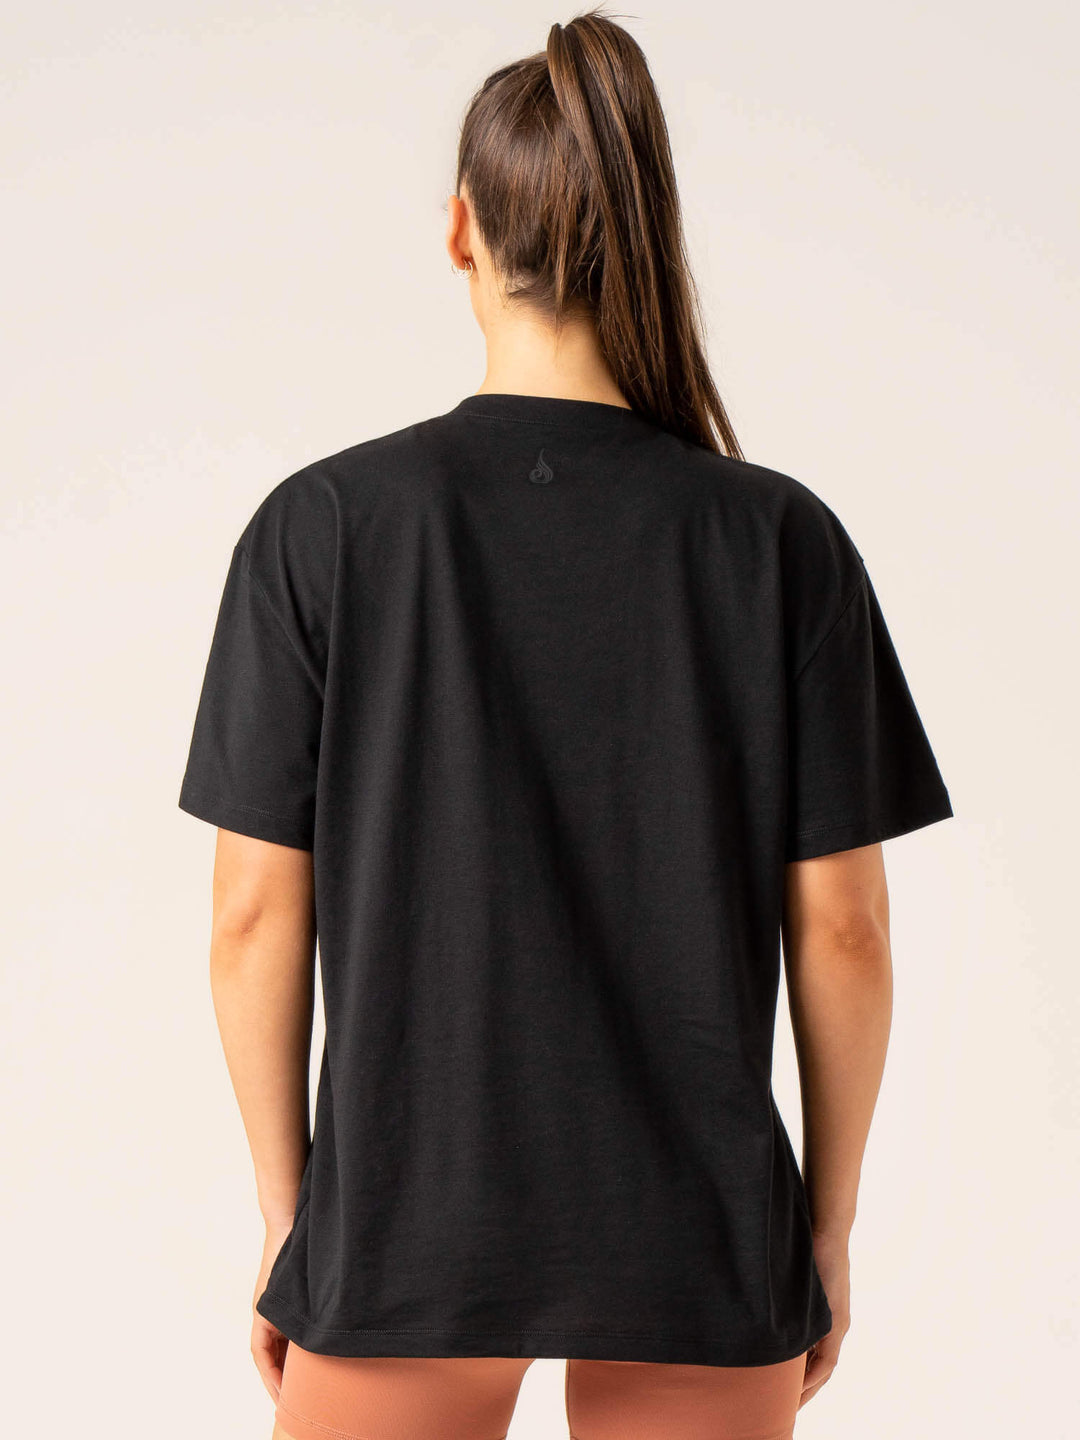 Momentum Oversized T-Shirt - Black Clothing Ryderwear 